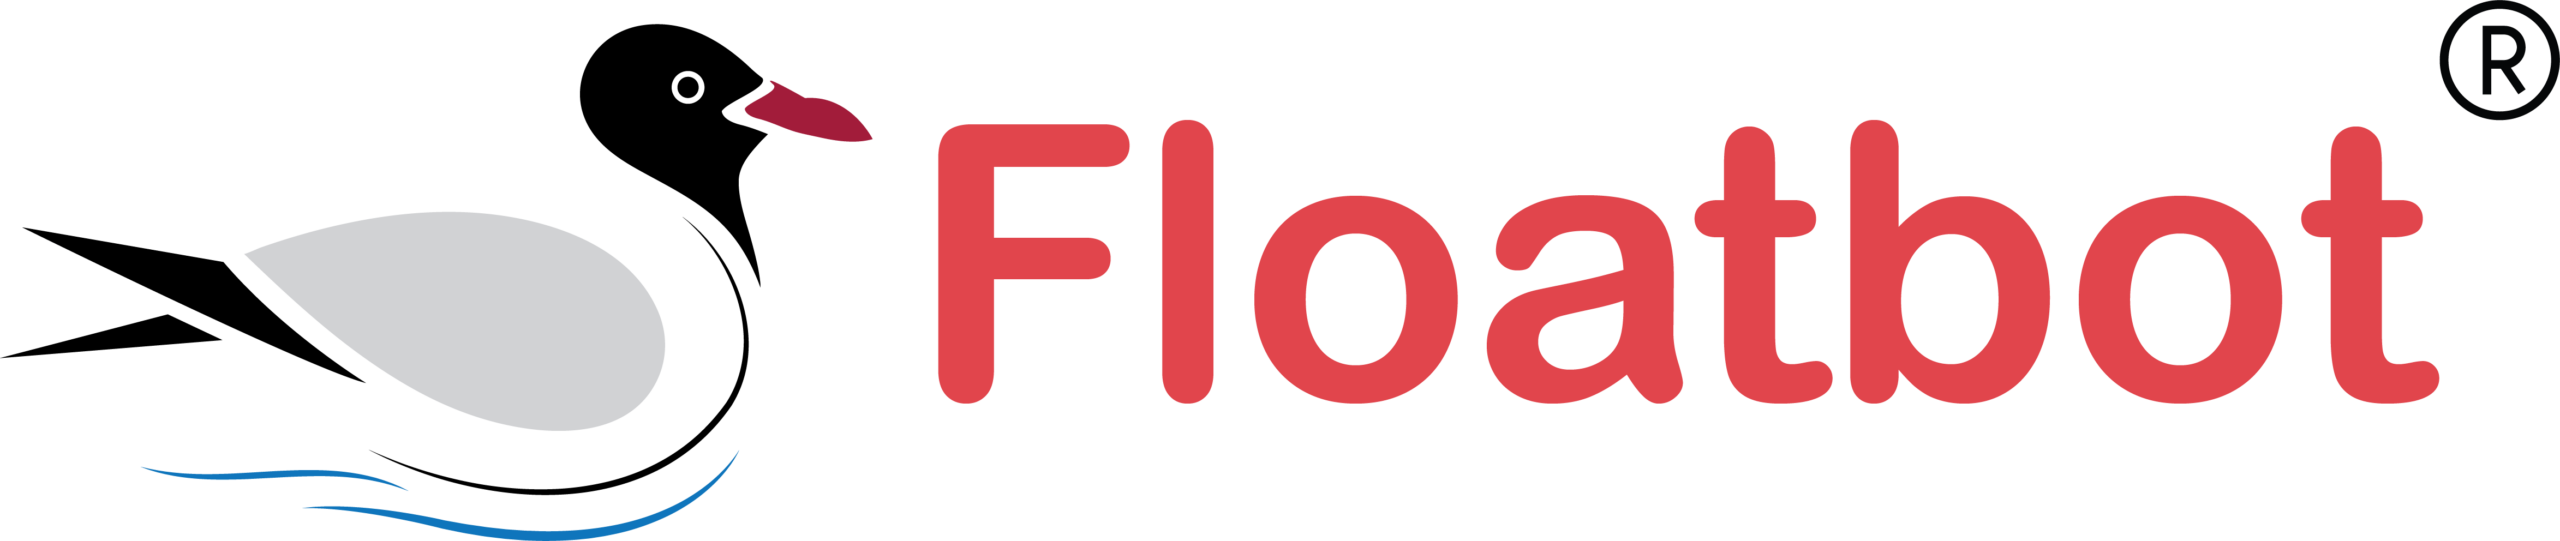 floatbot-logo.png